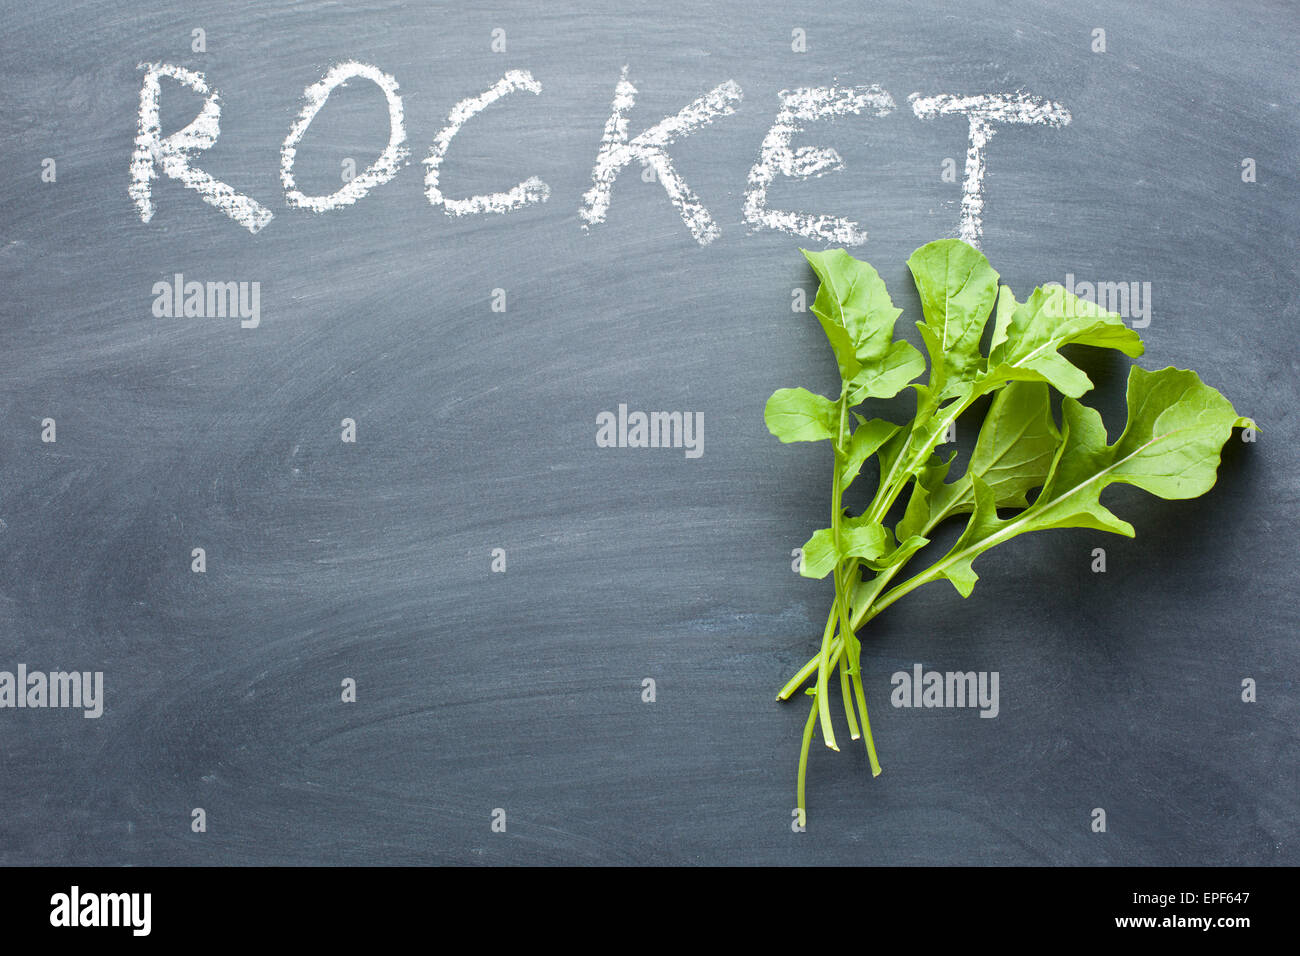 fresh rocket leaves on chalkboard Stock Photo